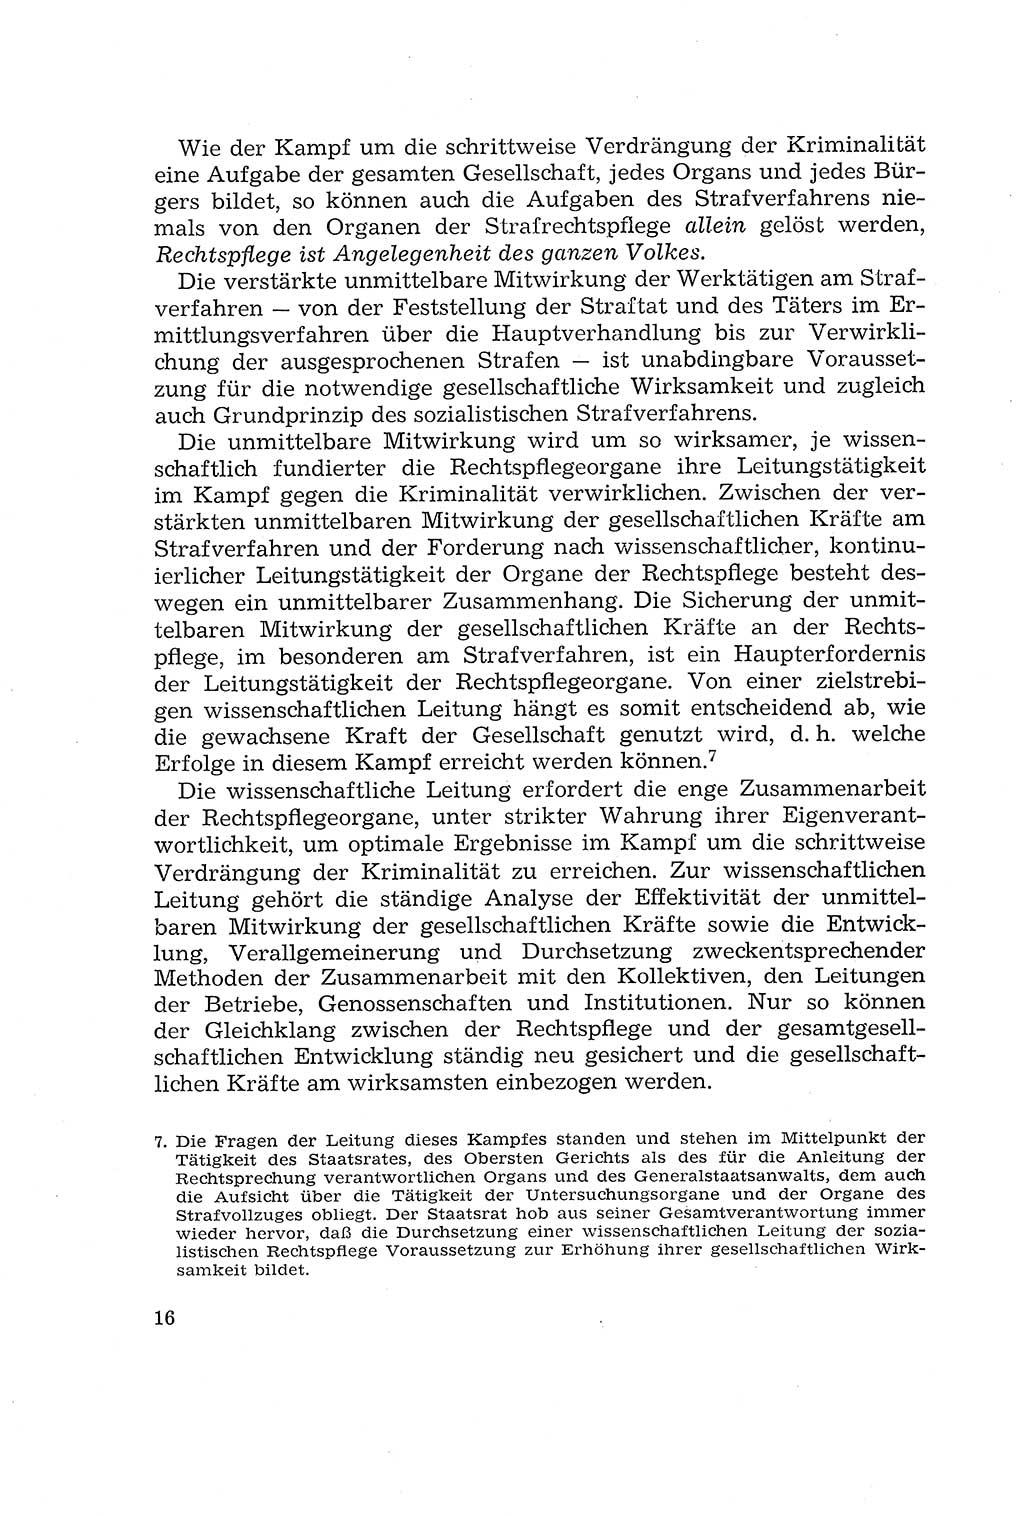 Die Mitwirkung der WerktÃ¤tigen am Strafverfahren [Deutsche Demokratische Republik (DDR)] 1966, Seite 16 (Mitw. Str.-Verf. DDR 1966, S. 16)